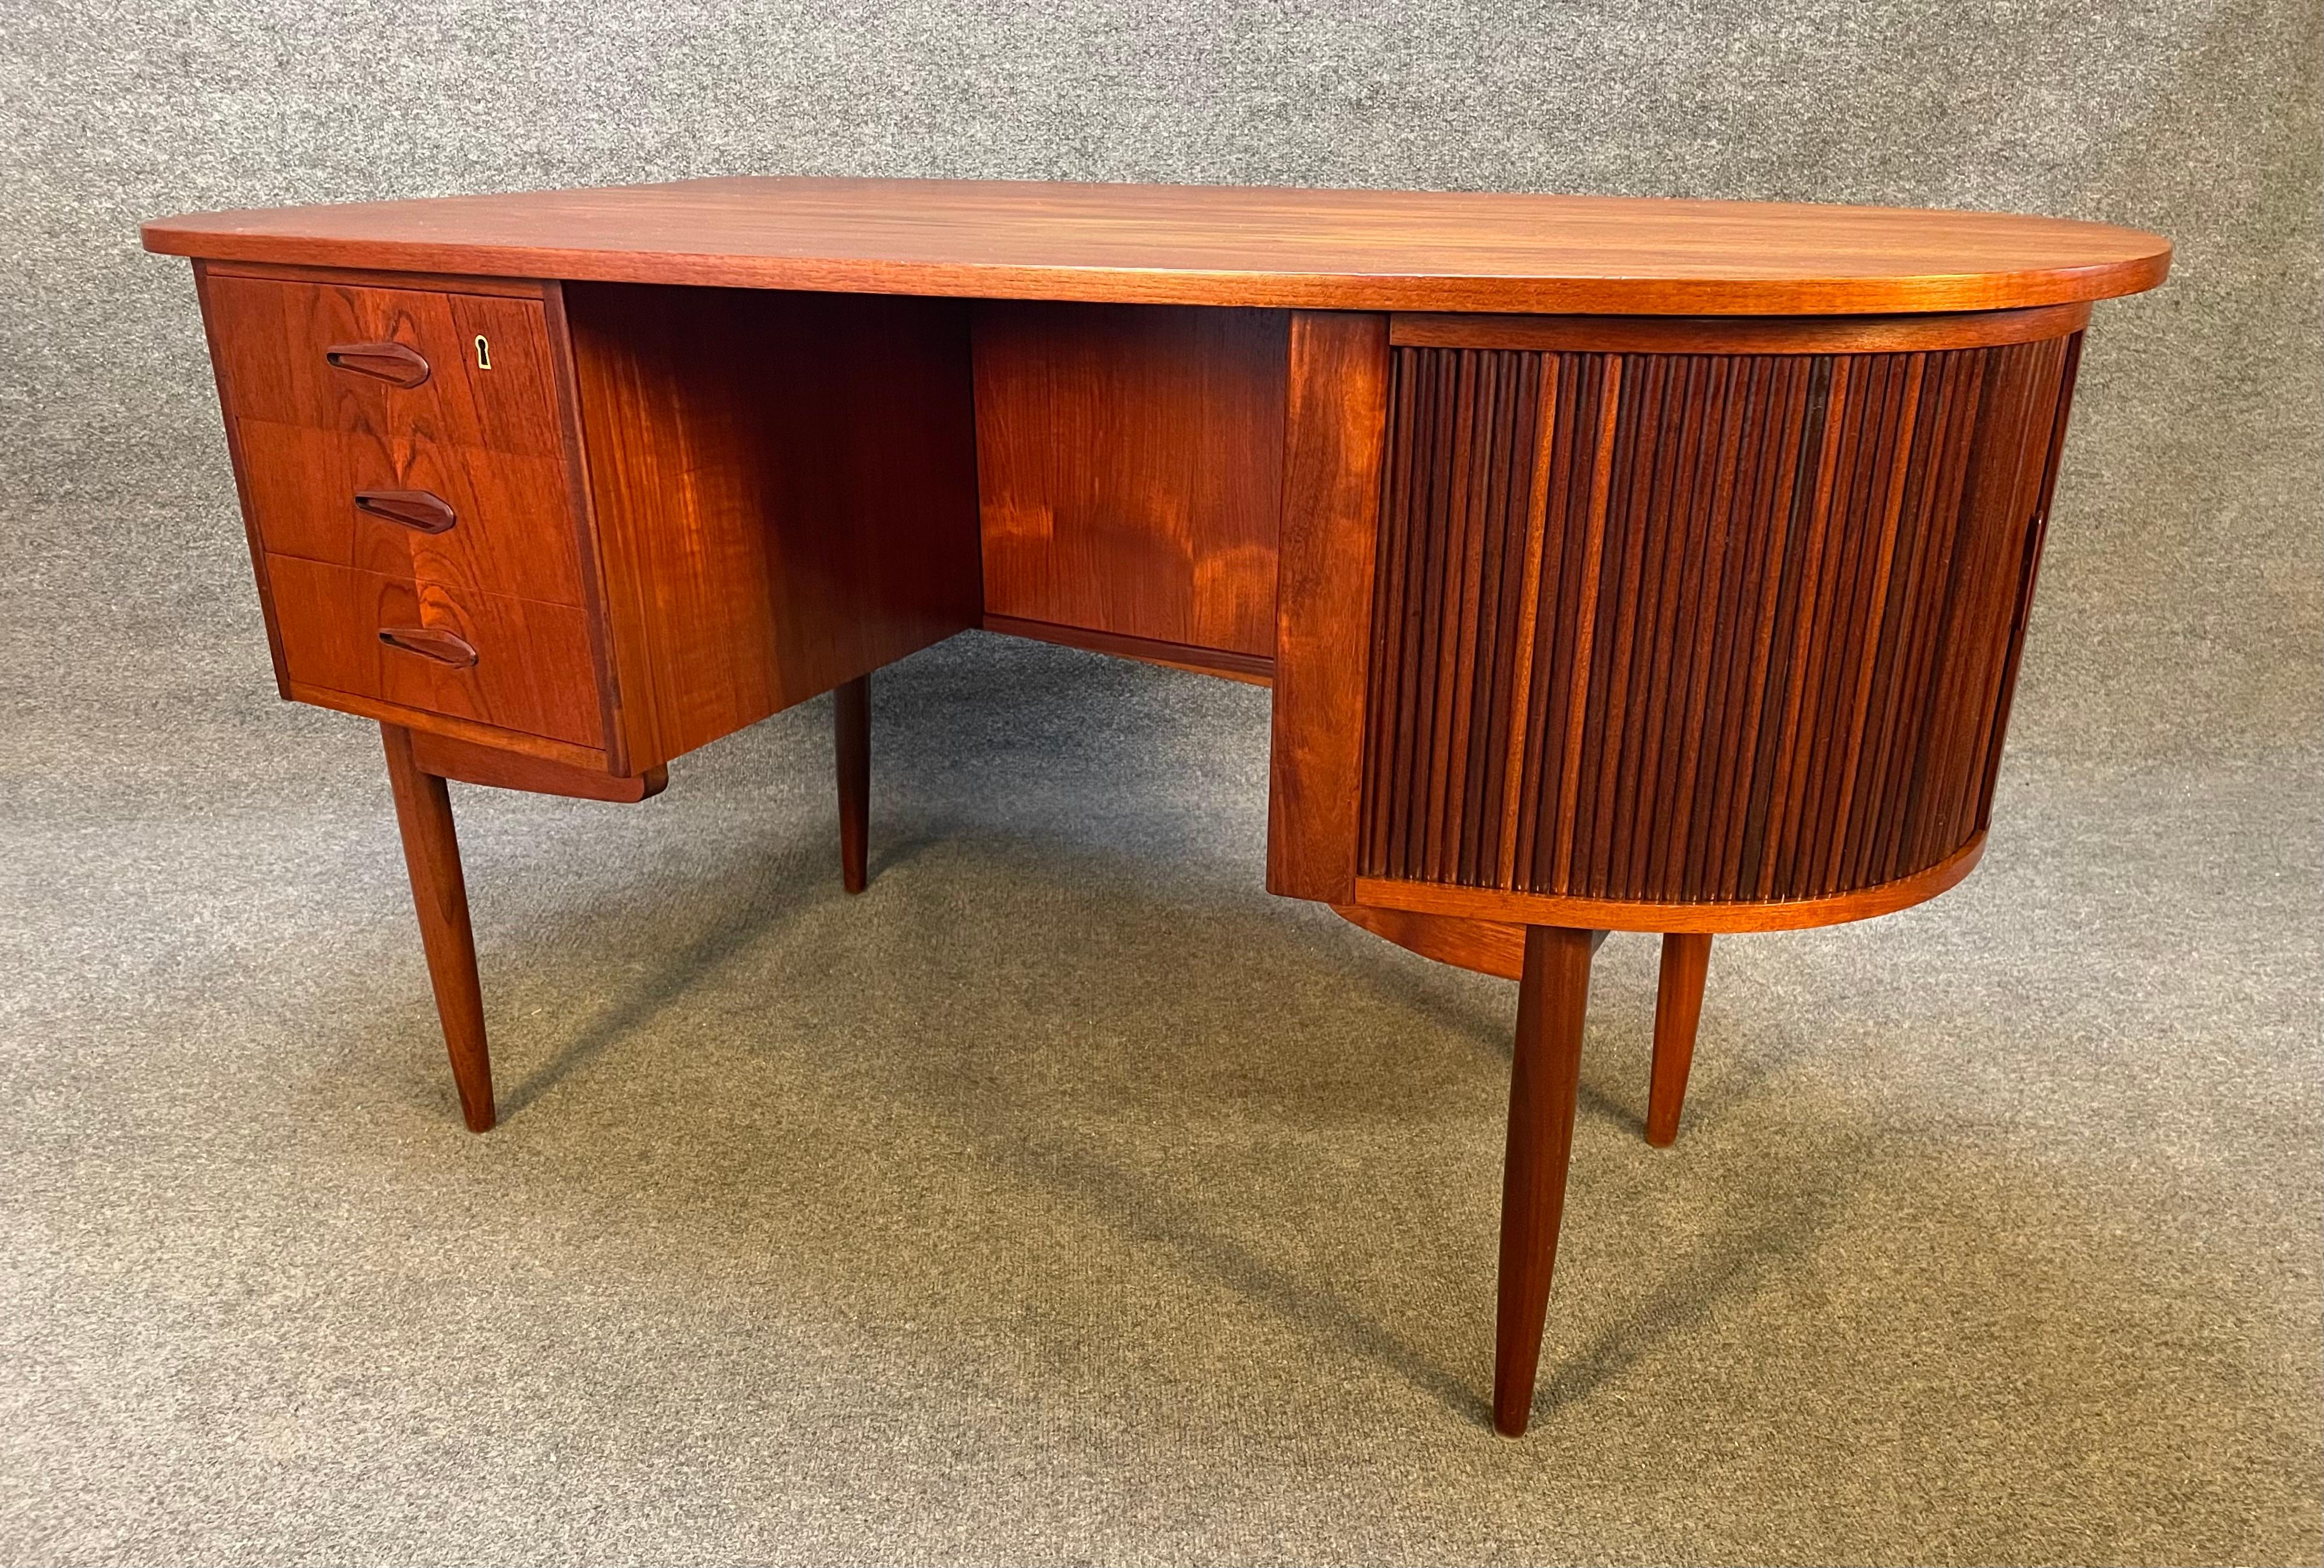 Hier ist ein schöner skandinavischer moderner Schreibtisch aus Teakholz, der in den 1960er Jahren in Dänemark hergestellt wurde und dessen Design an Kai Kristiansen erinnert.
Dieser besondere Schreibtisch, der vor kurzem aus Europa nach Kalifornien